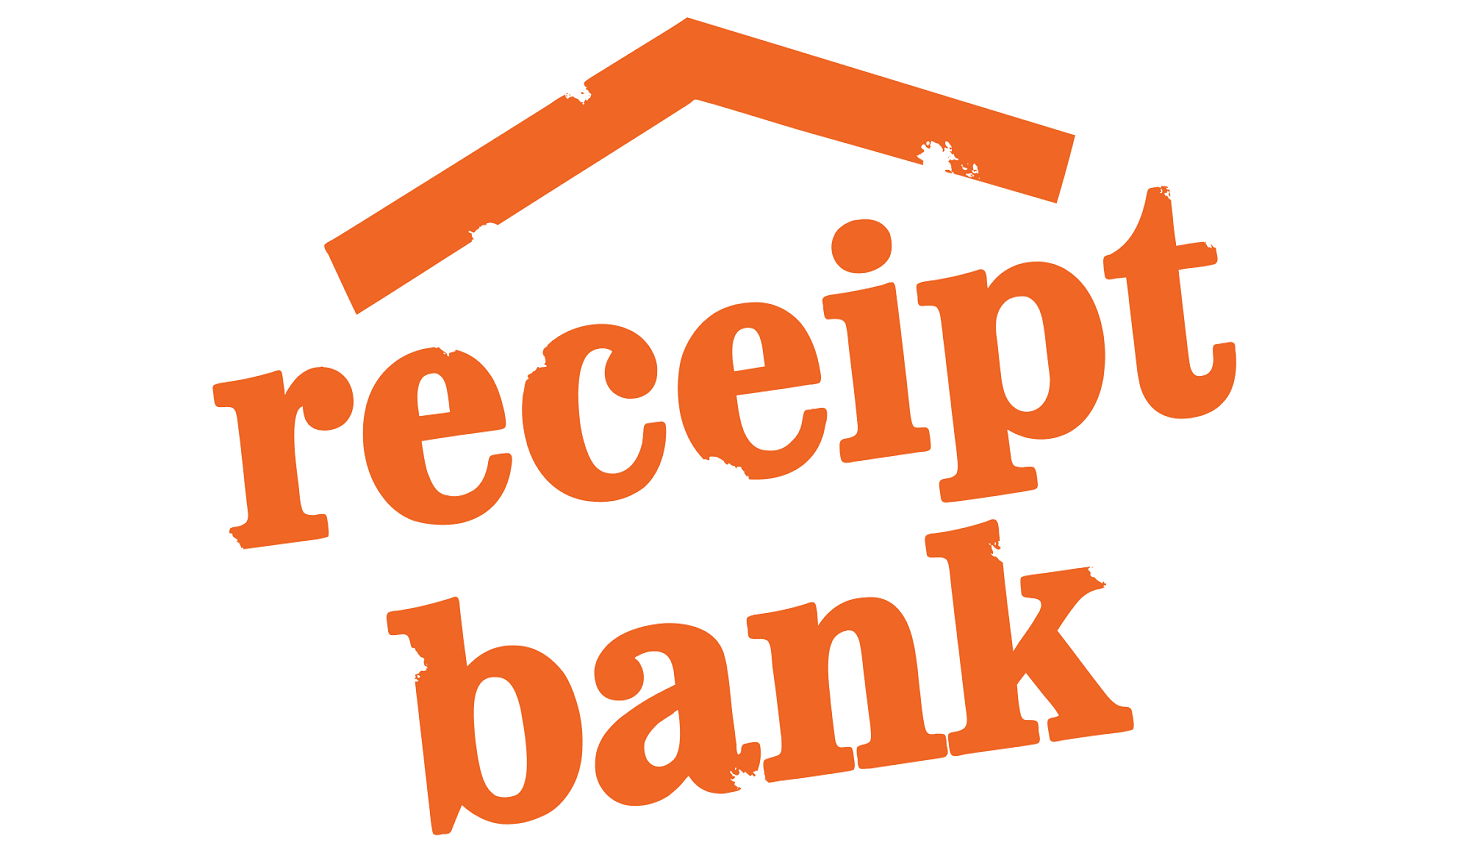 receipt-bank-logo